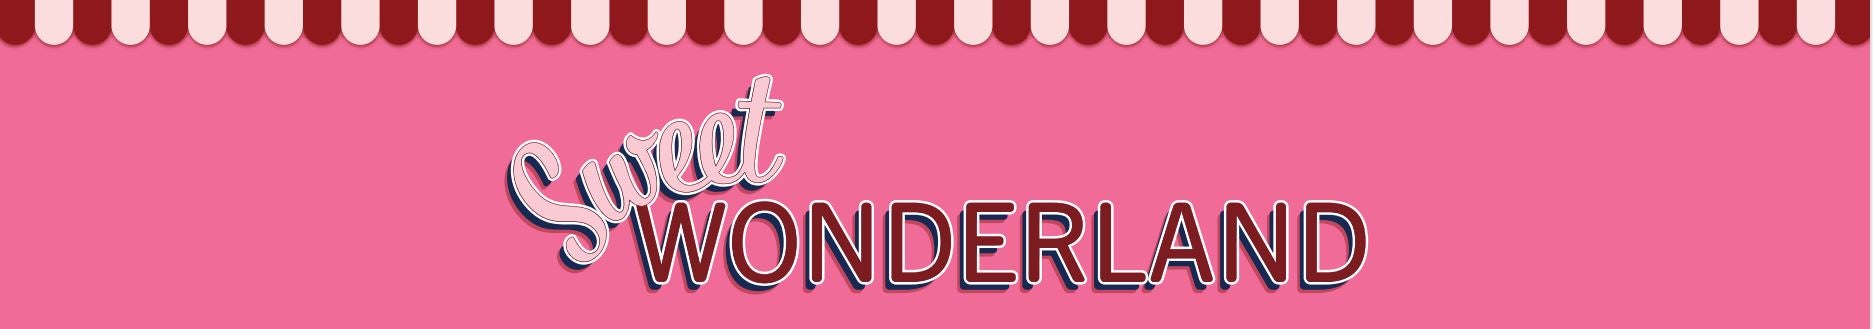 Sweet Wonderland - Stand 118.JPG